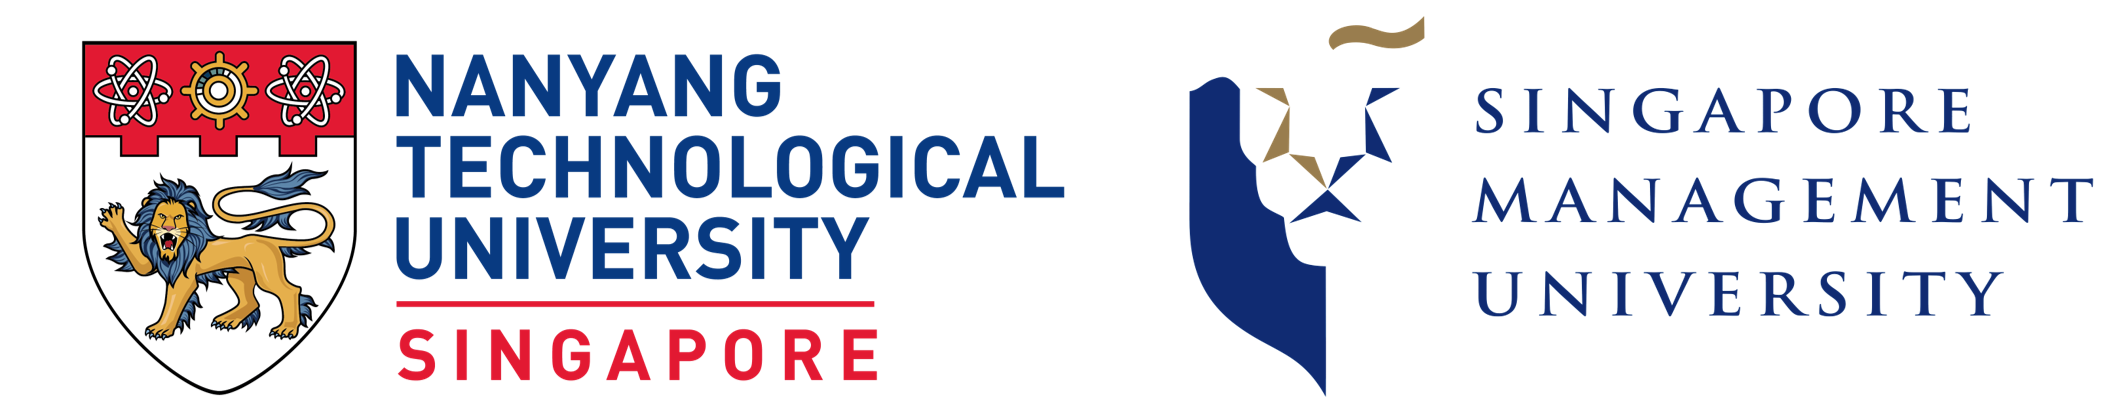 Logo of Nanyang Technological University & Singapore Management University